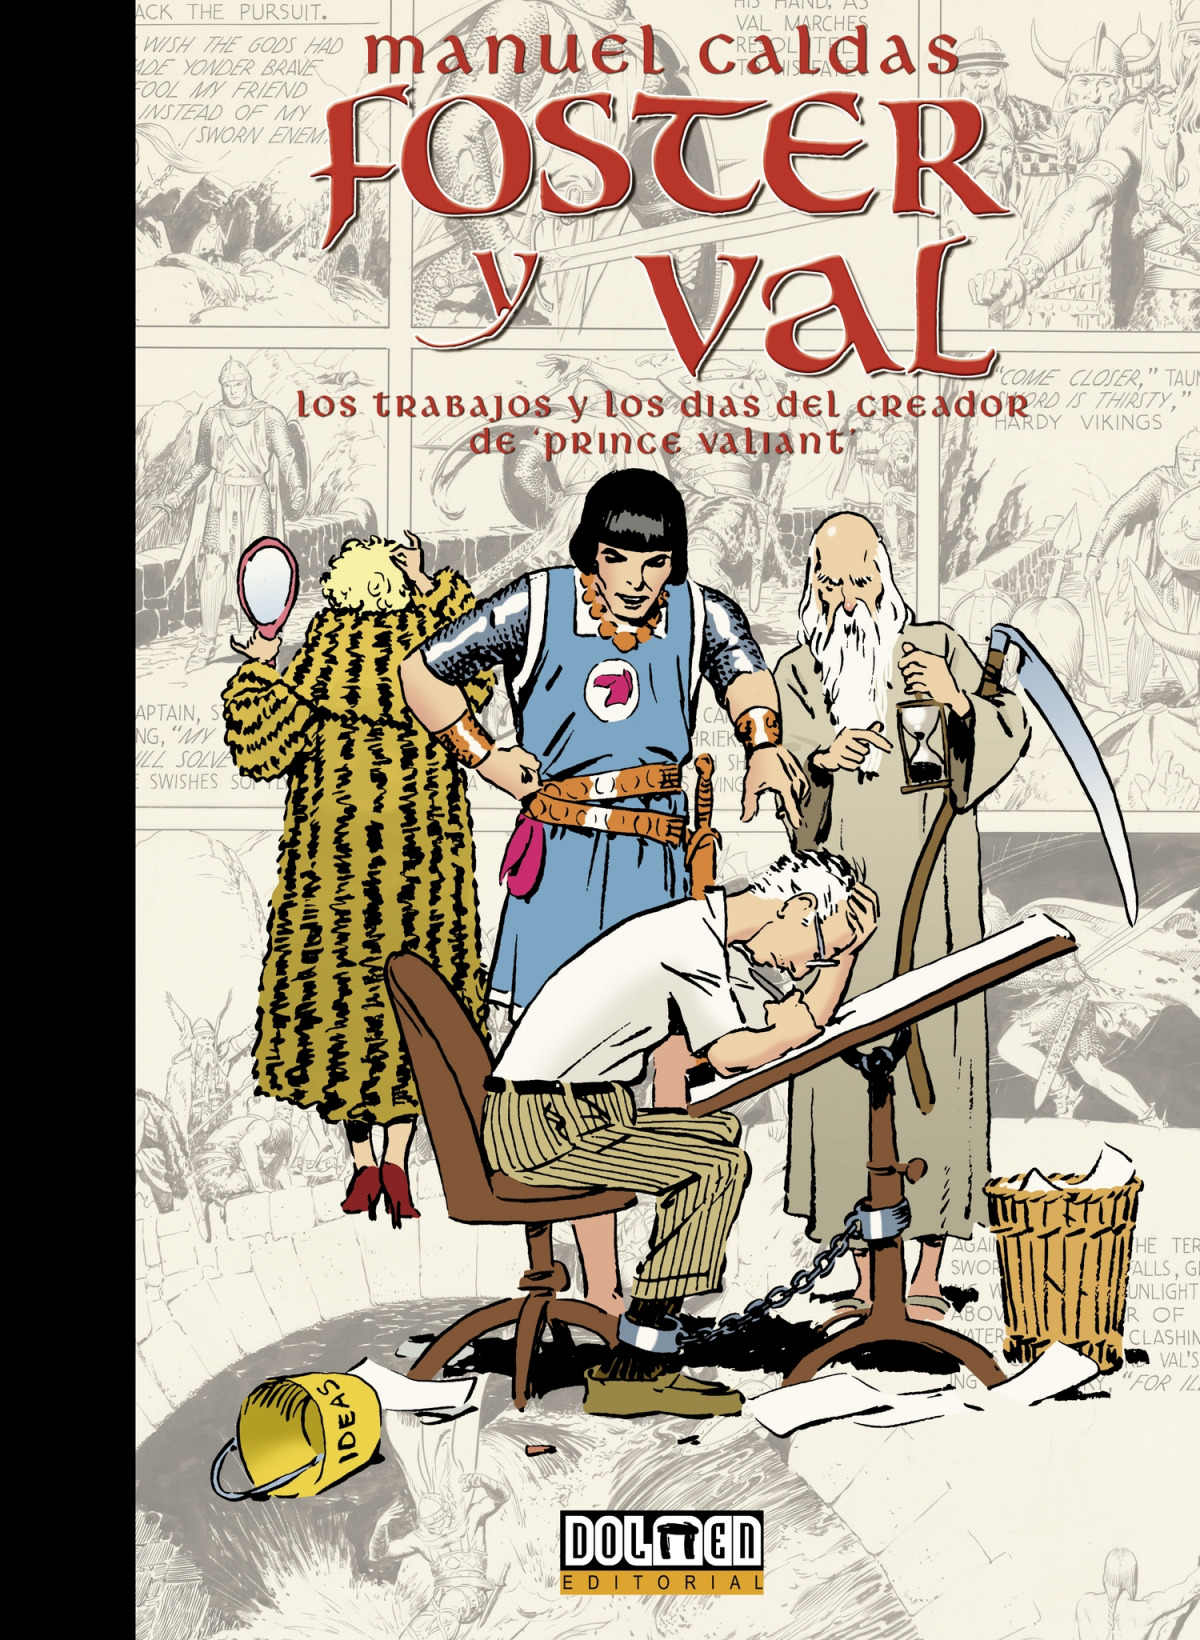 Foster y Val Los trabajos y los días del creador de Prince Valiant - Caldas, Manuel